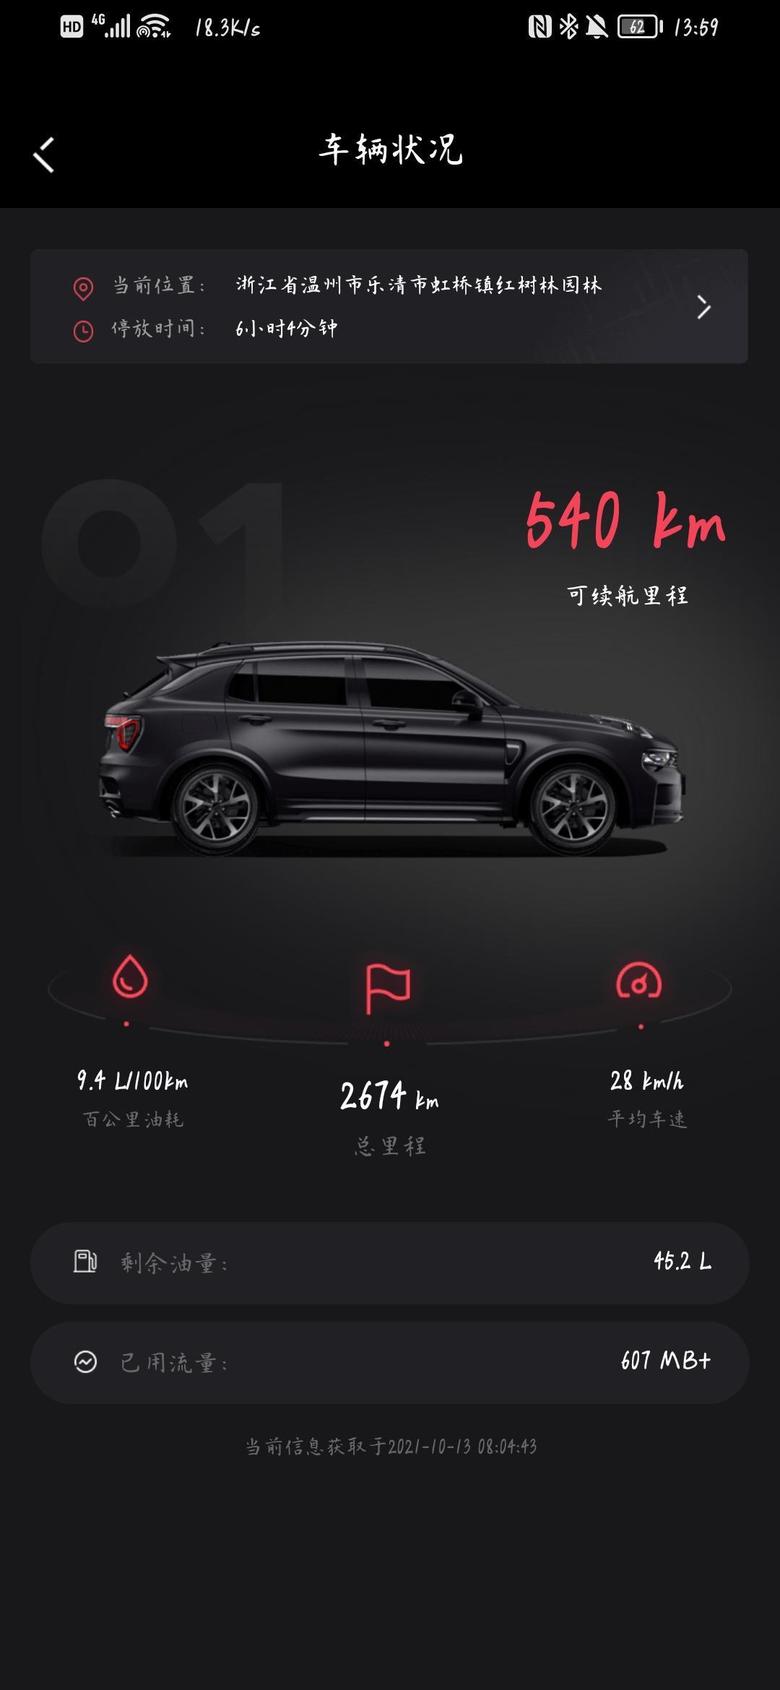 打卡坐标浙江温州，溜了3个月了6月份提的领克01，行驶了2674KM了